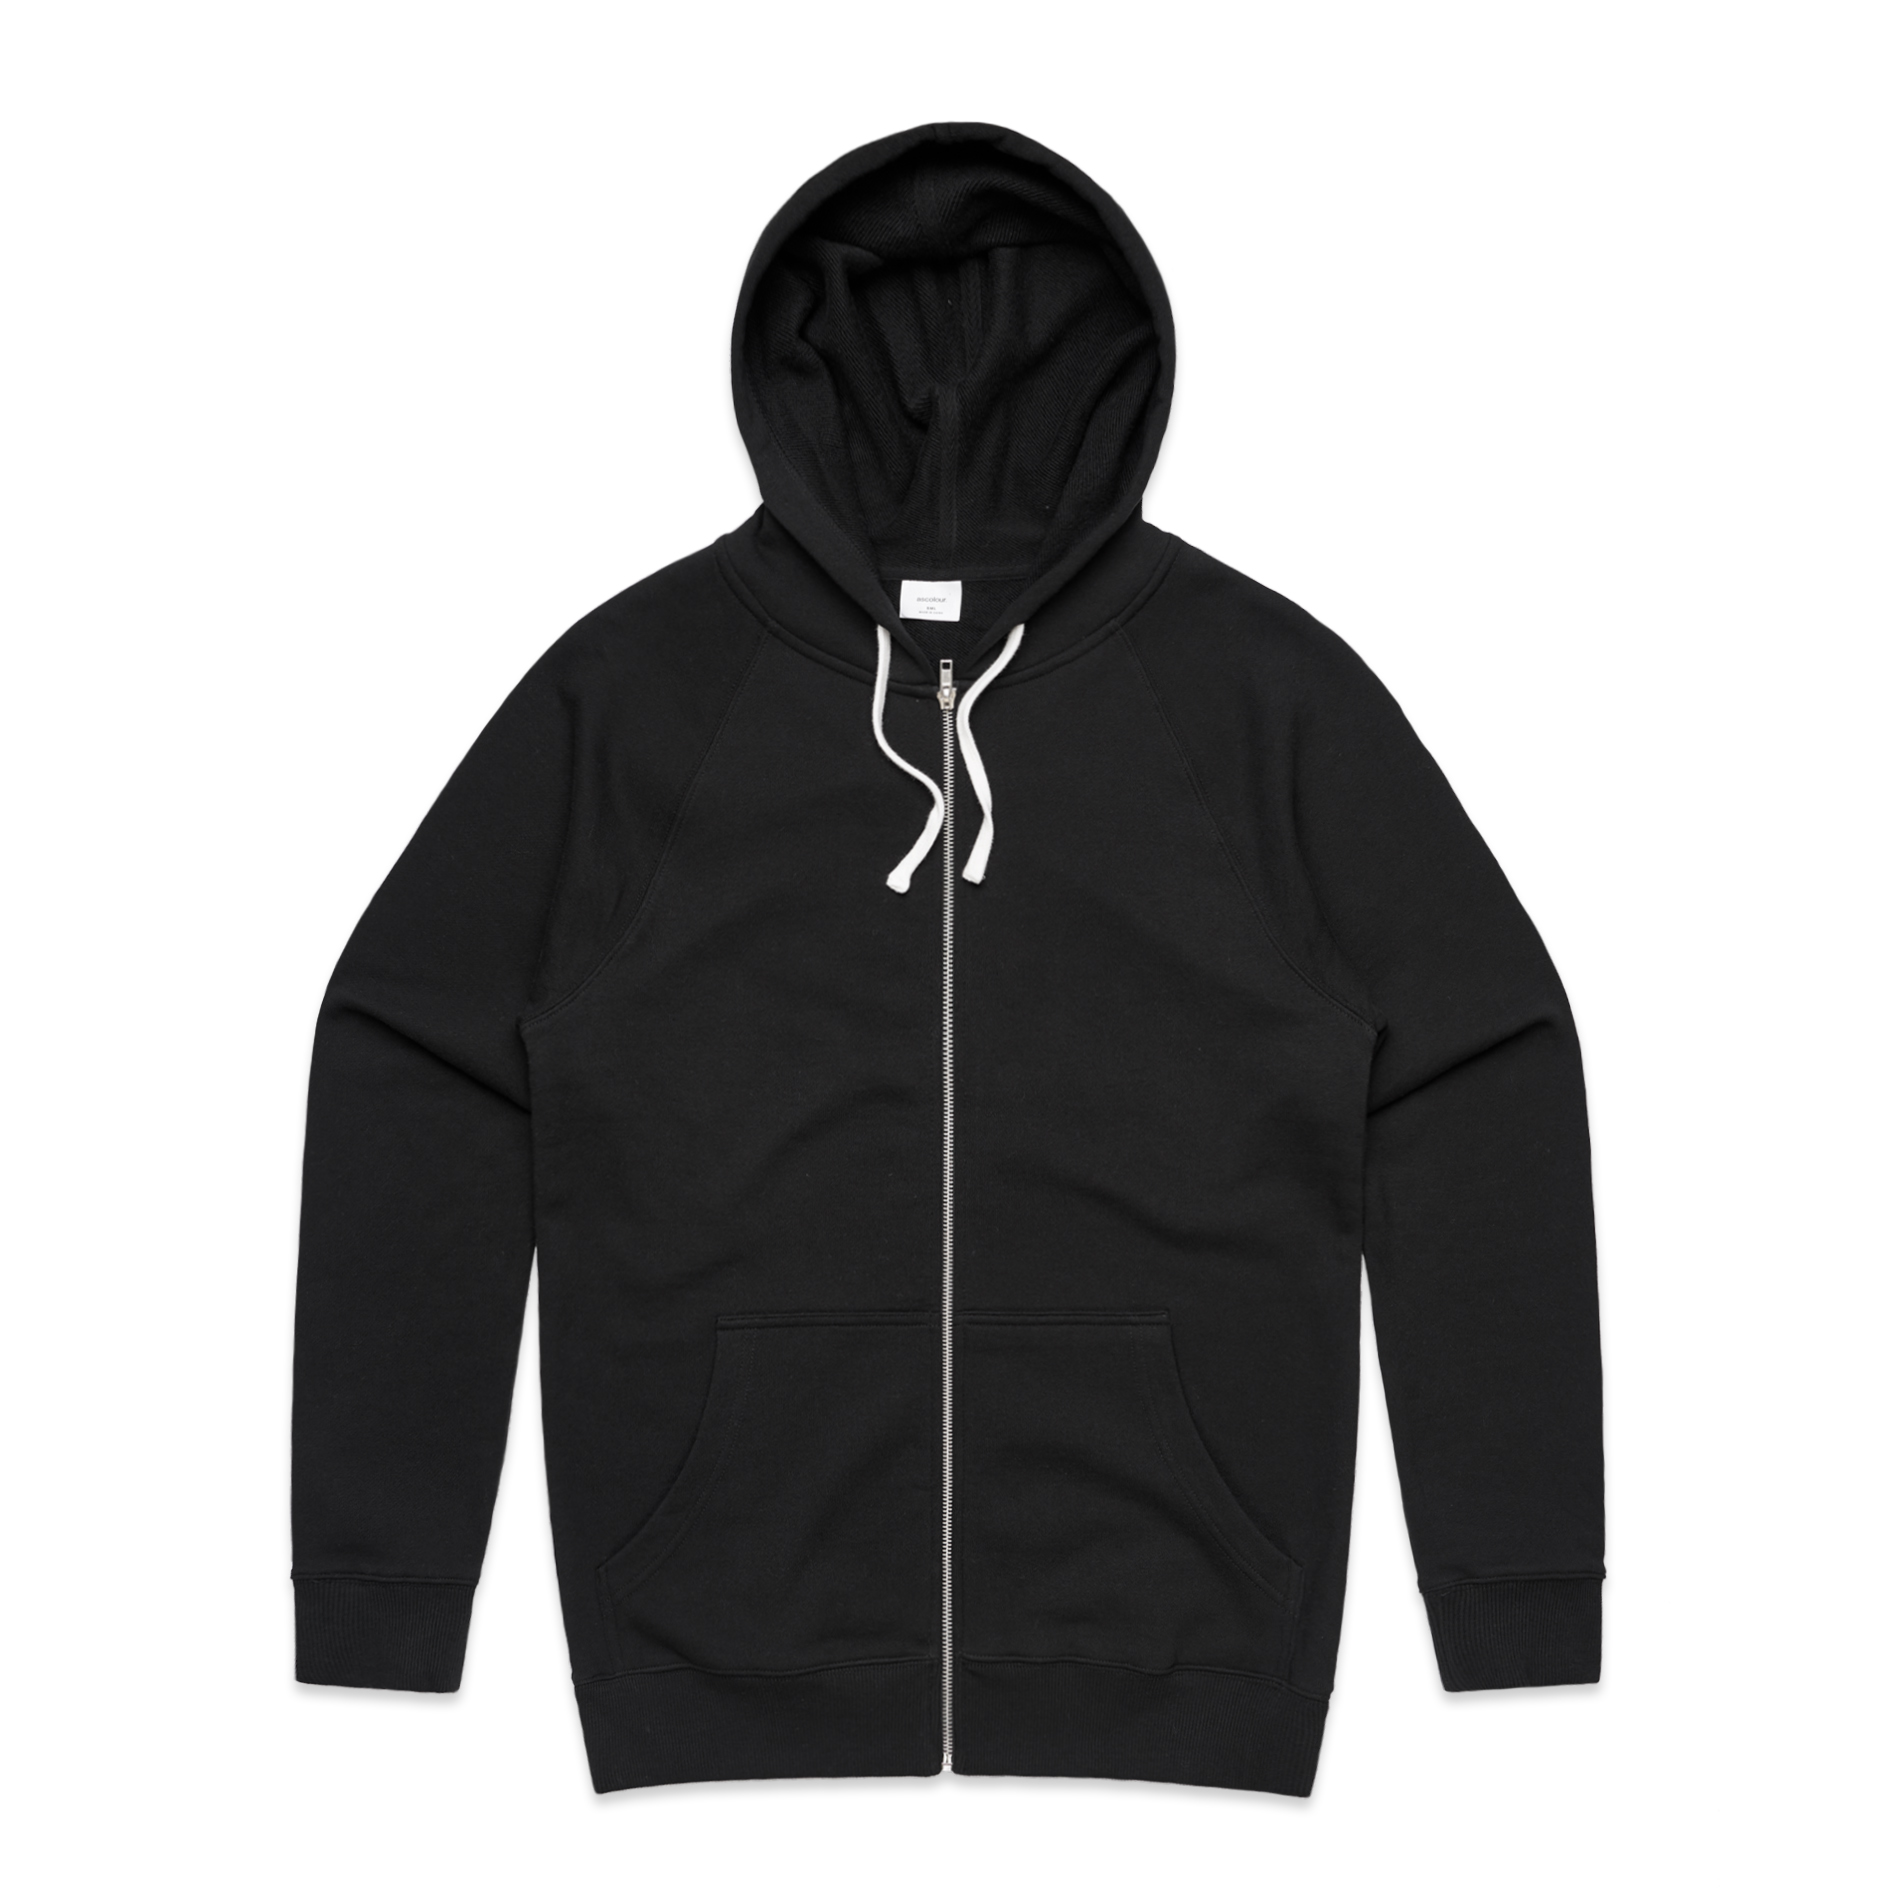 Men's Premium Zip Hood - Black 5122 - Uniform Edit